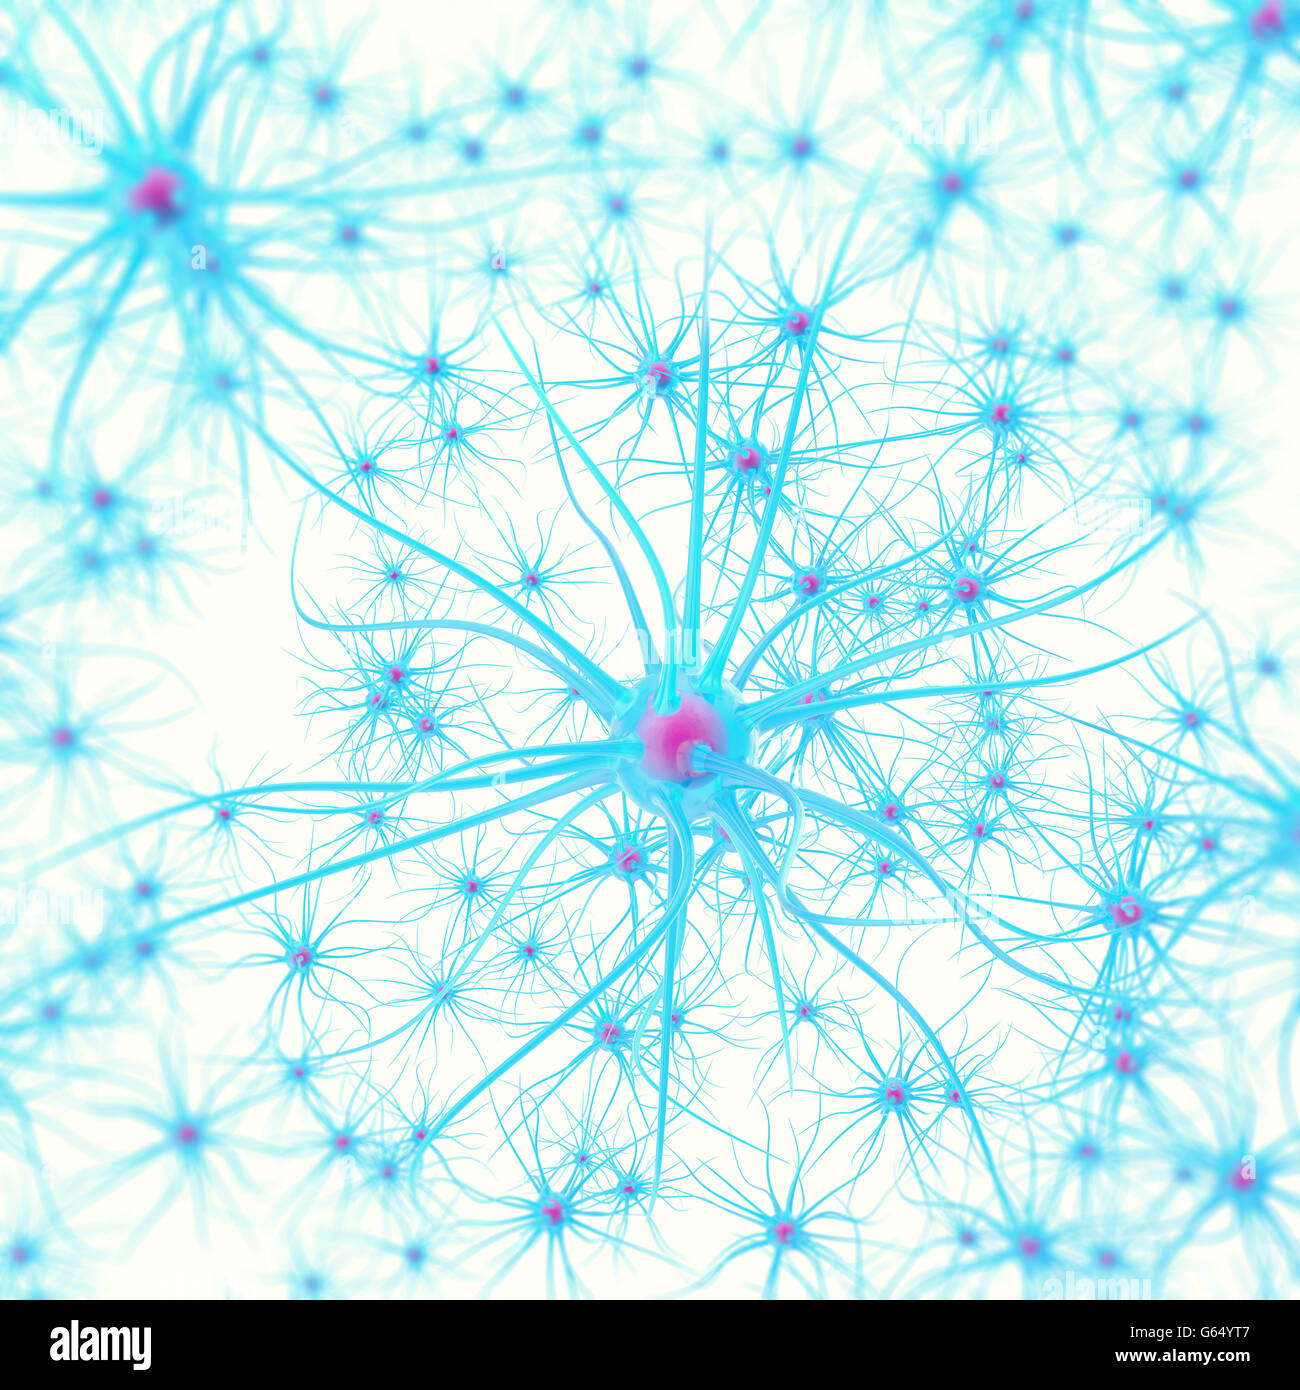 Les neurones dans le cerveau sur fond blanc avec l'accent d'effet. 3d illustration Banque D'Images